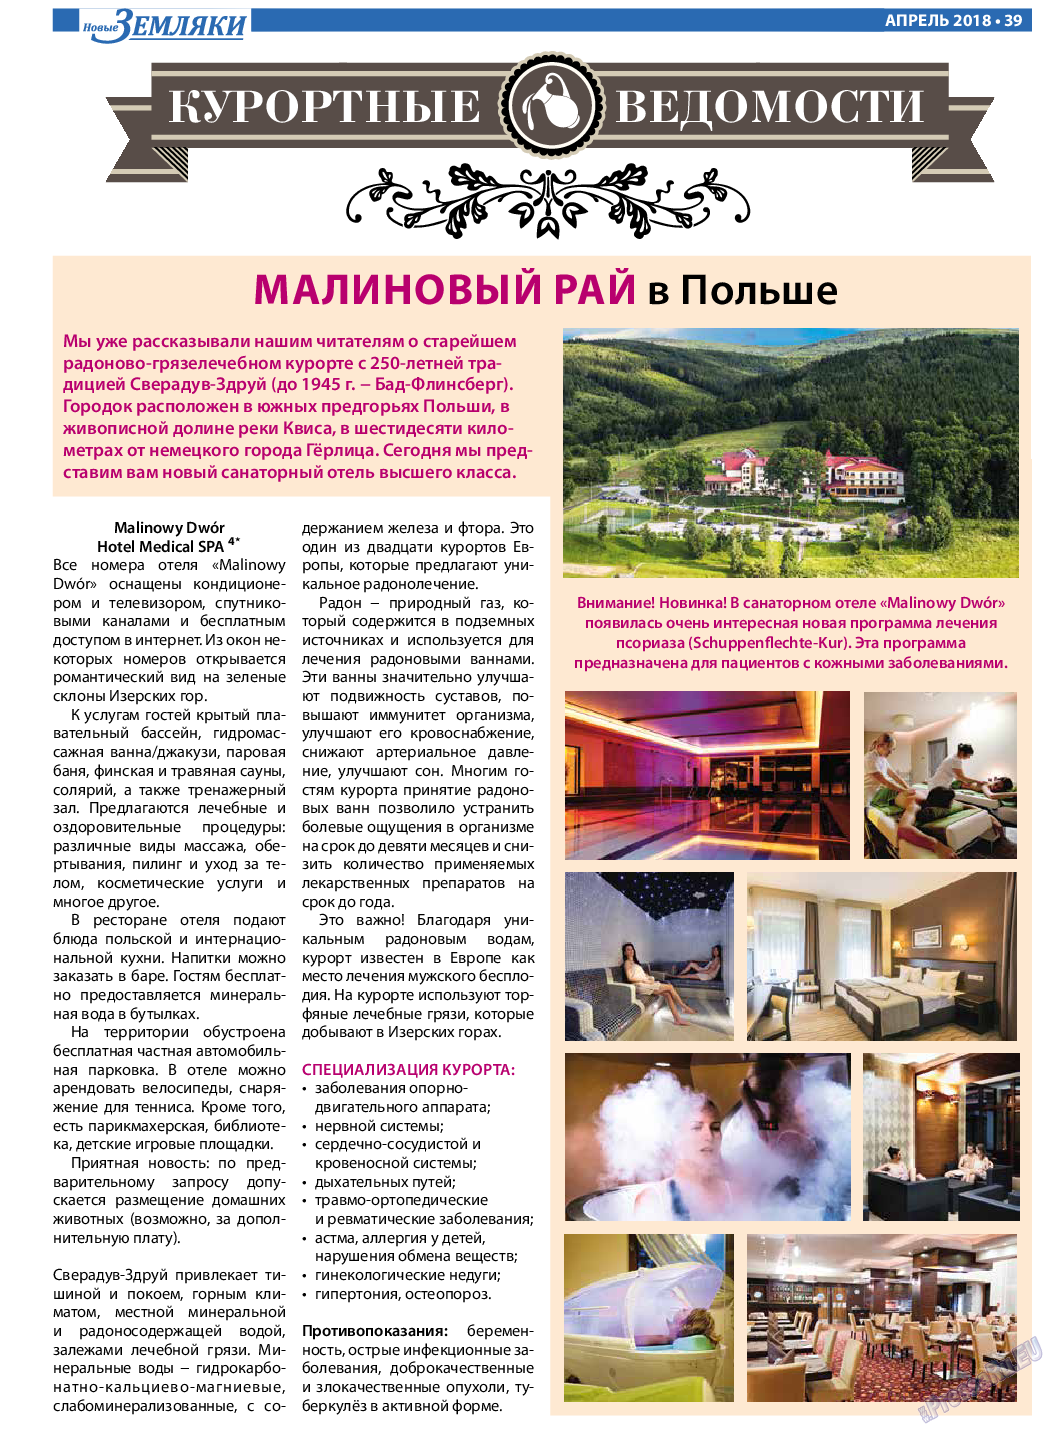 Новые Земляки, газета. 2018 №4 стр.39